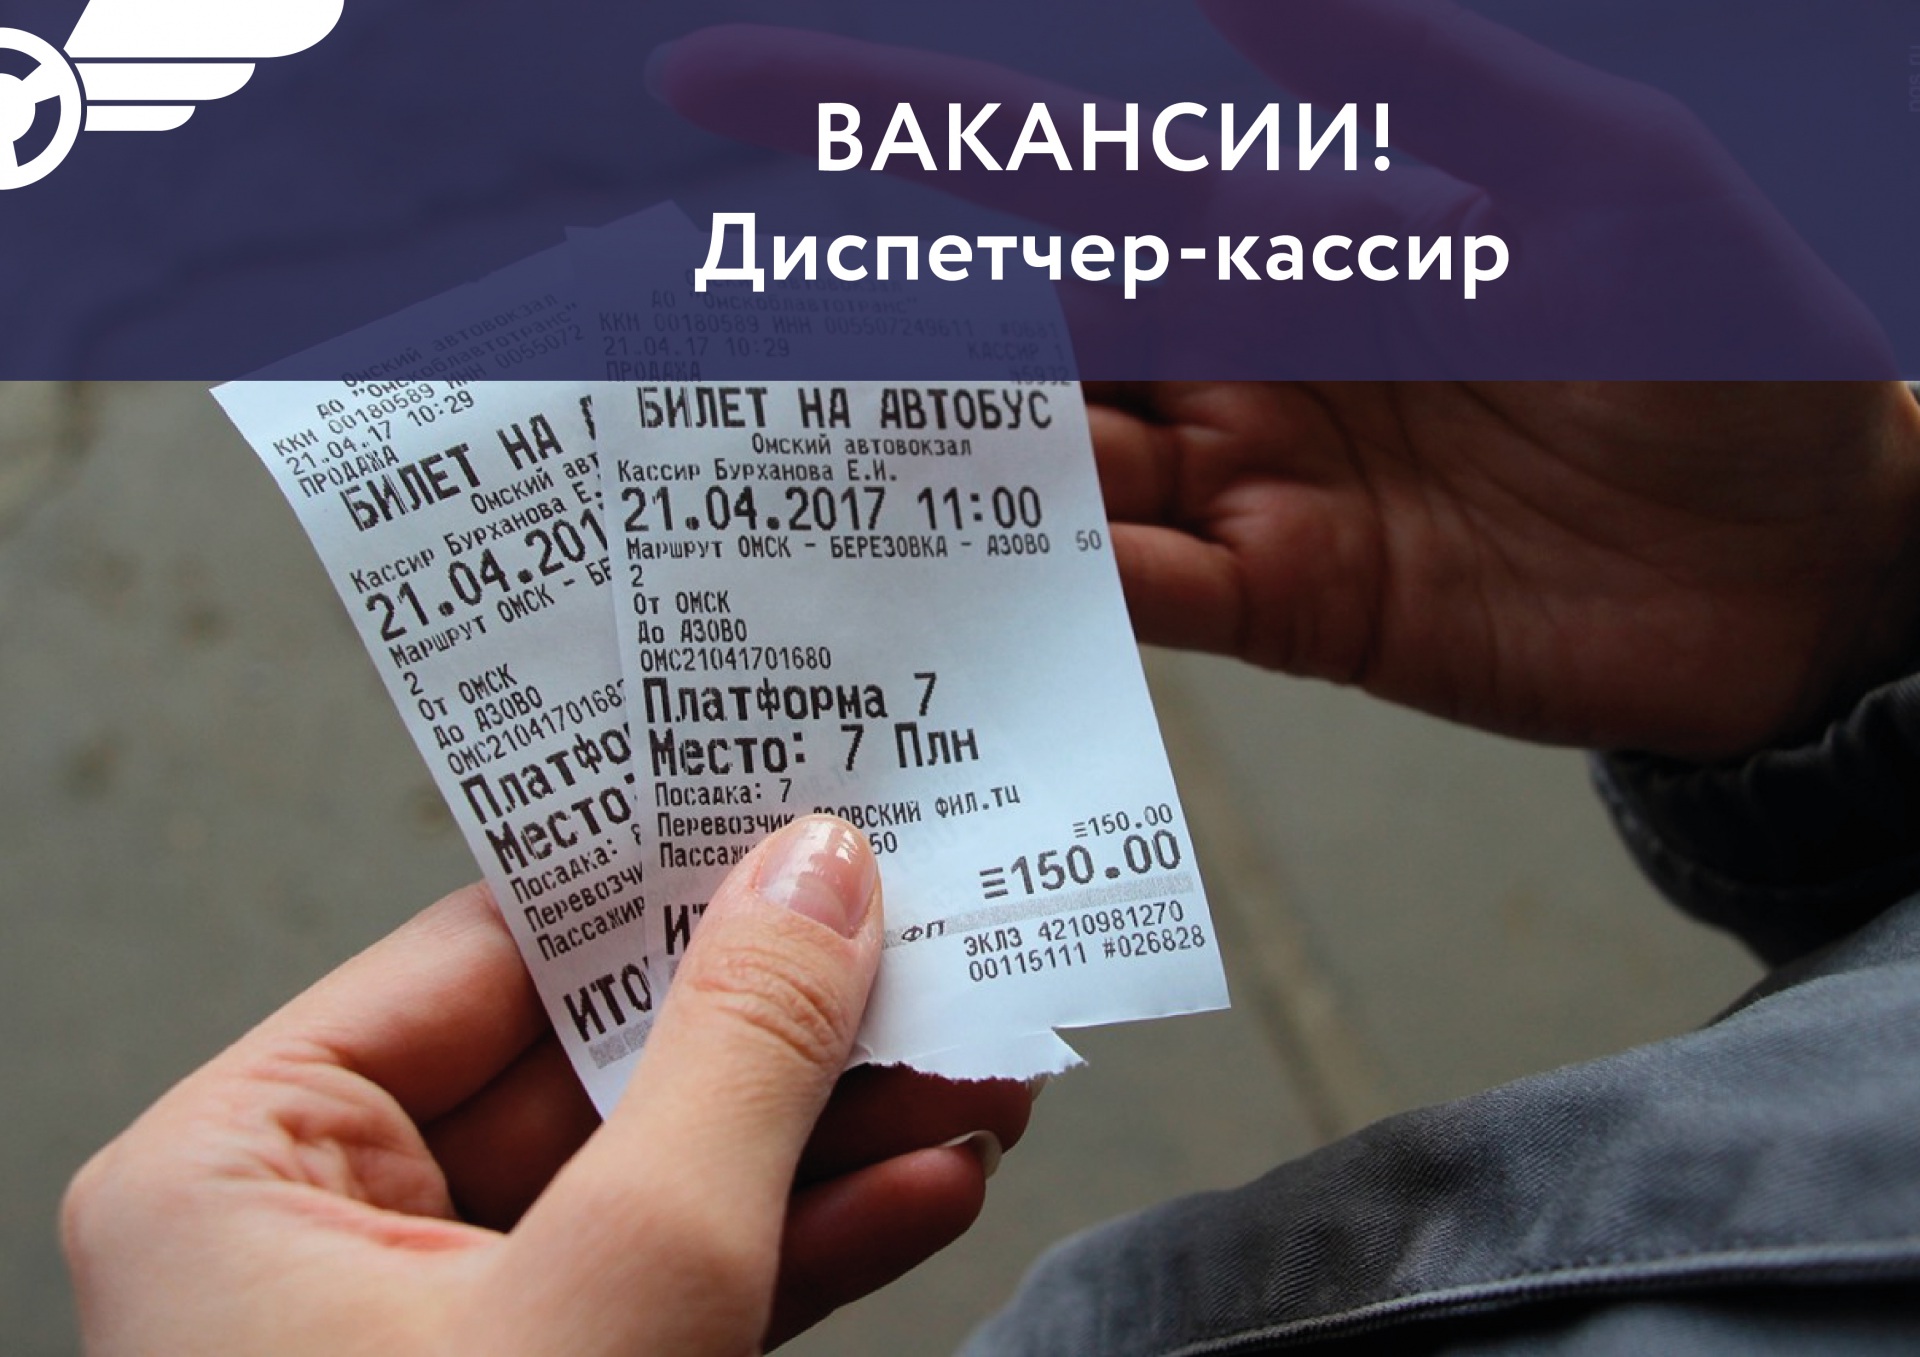 Билеты на автобус автовокзал благовещенск